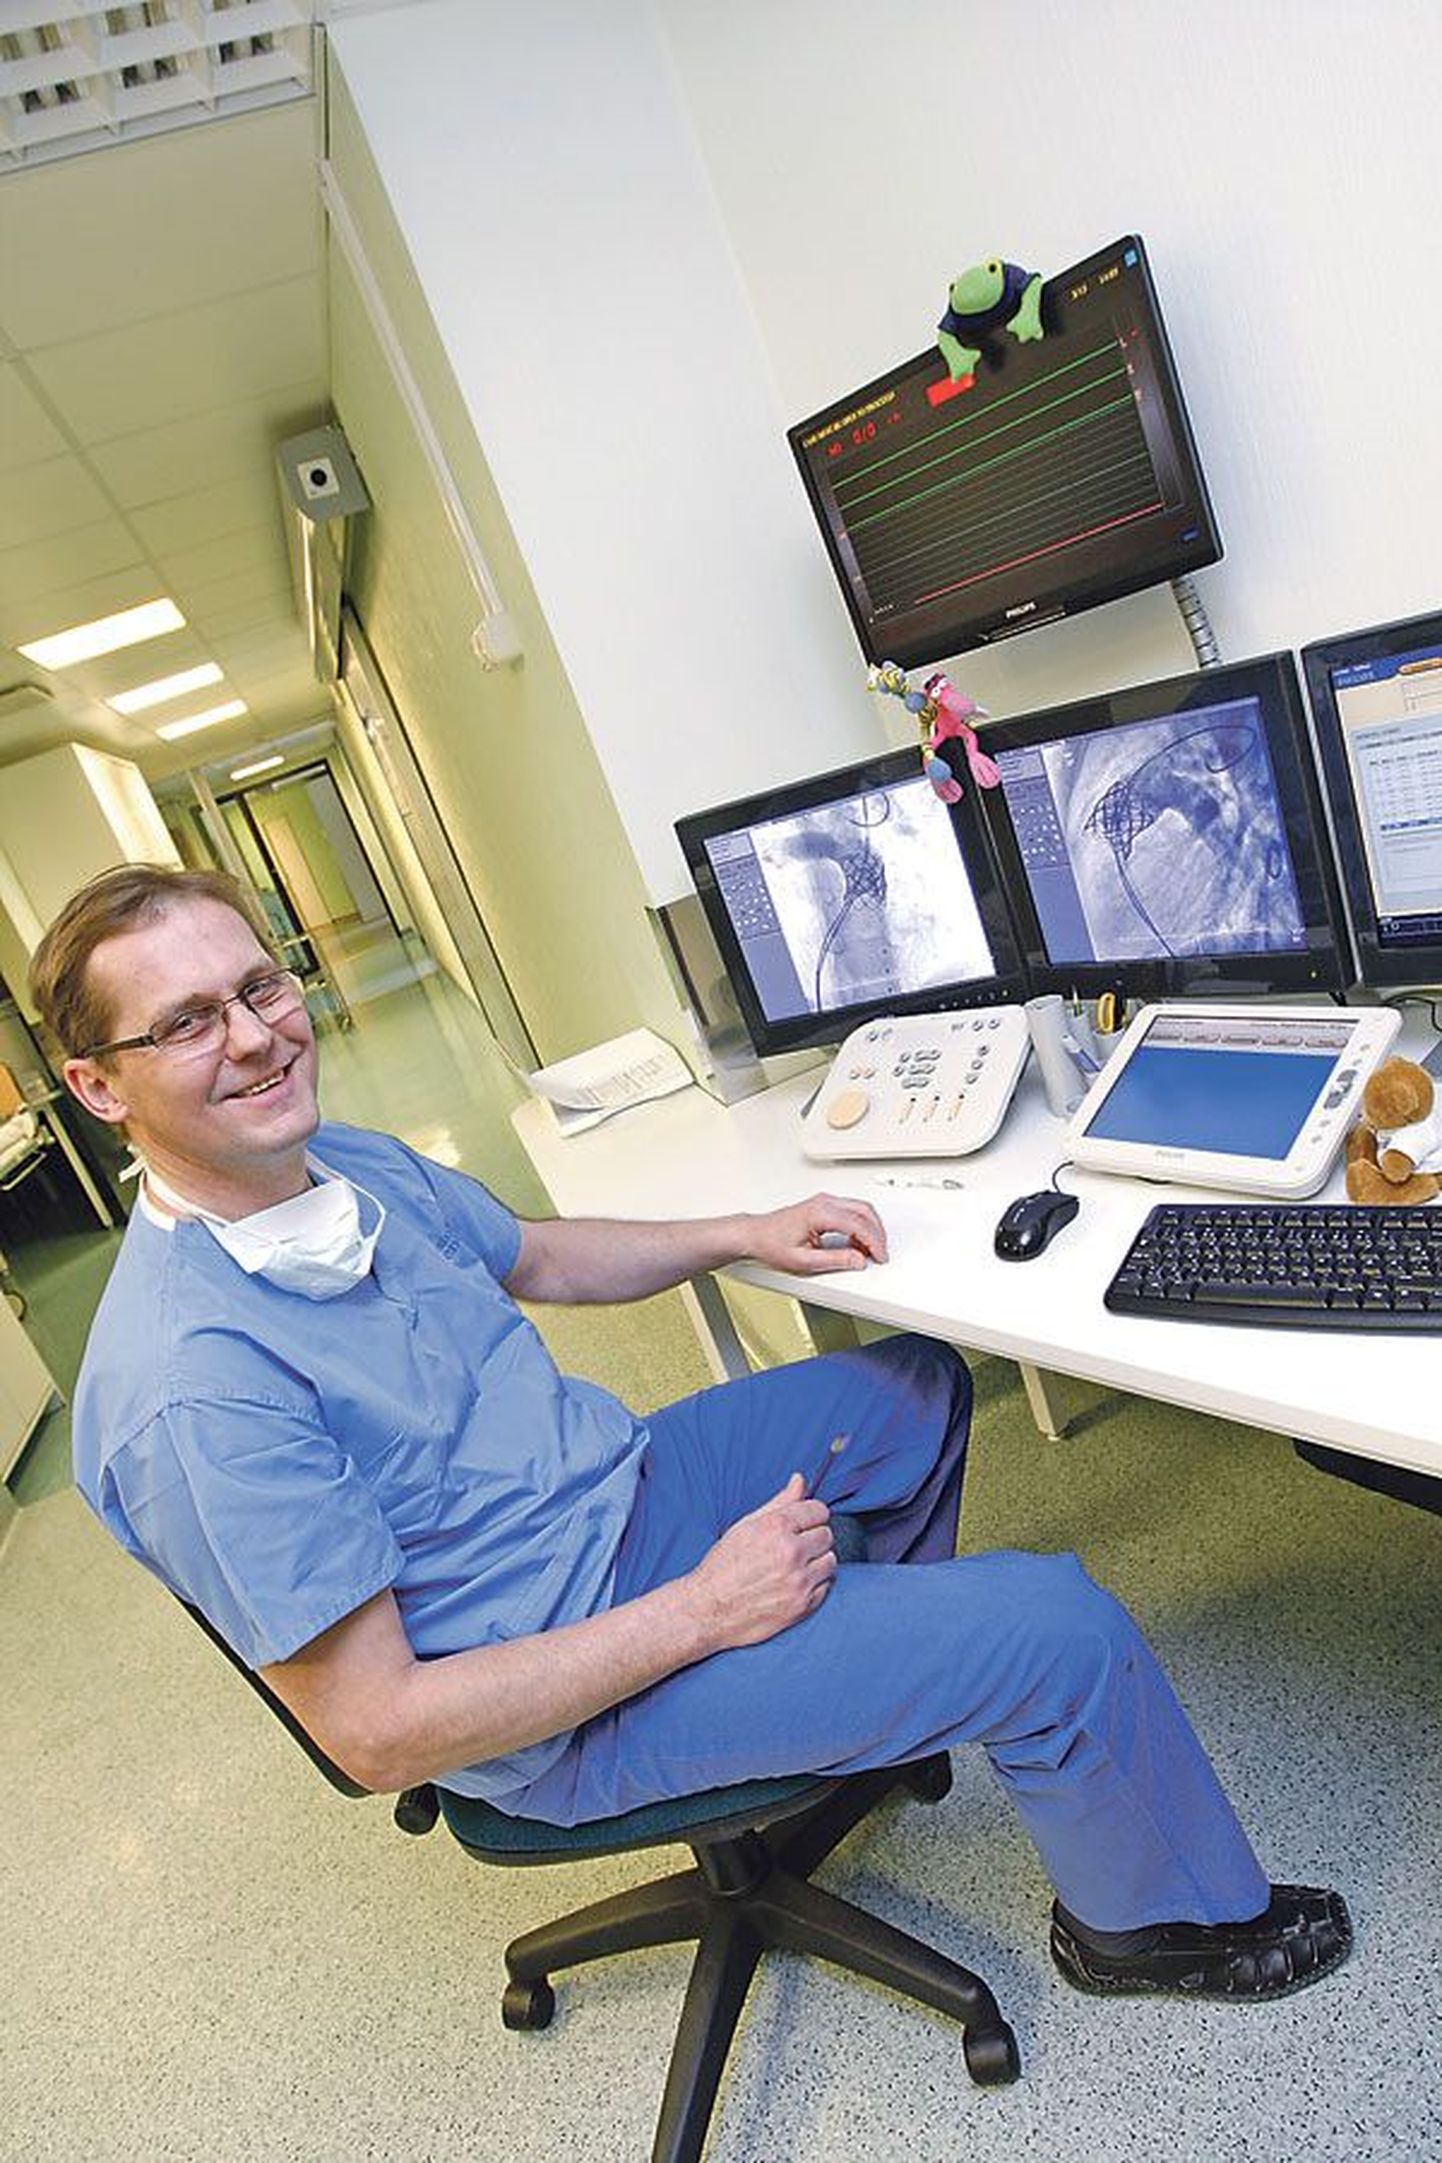 Тоомас Хермлин показывает экран дигитального ангиографа, который позволяет просмотреть результаты всех проведенных ранее действий врачей, в том числе и проведенные шестого марта операции по имплантации клапанов.